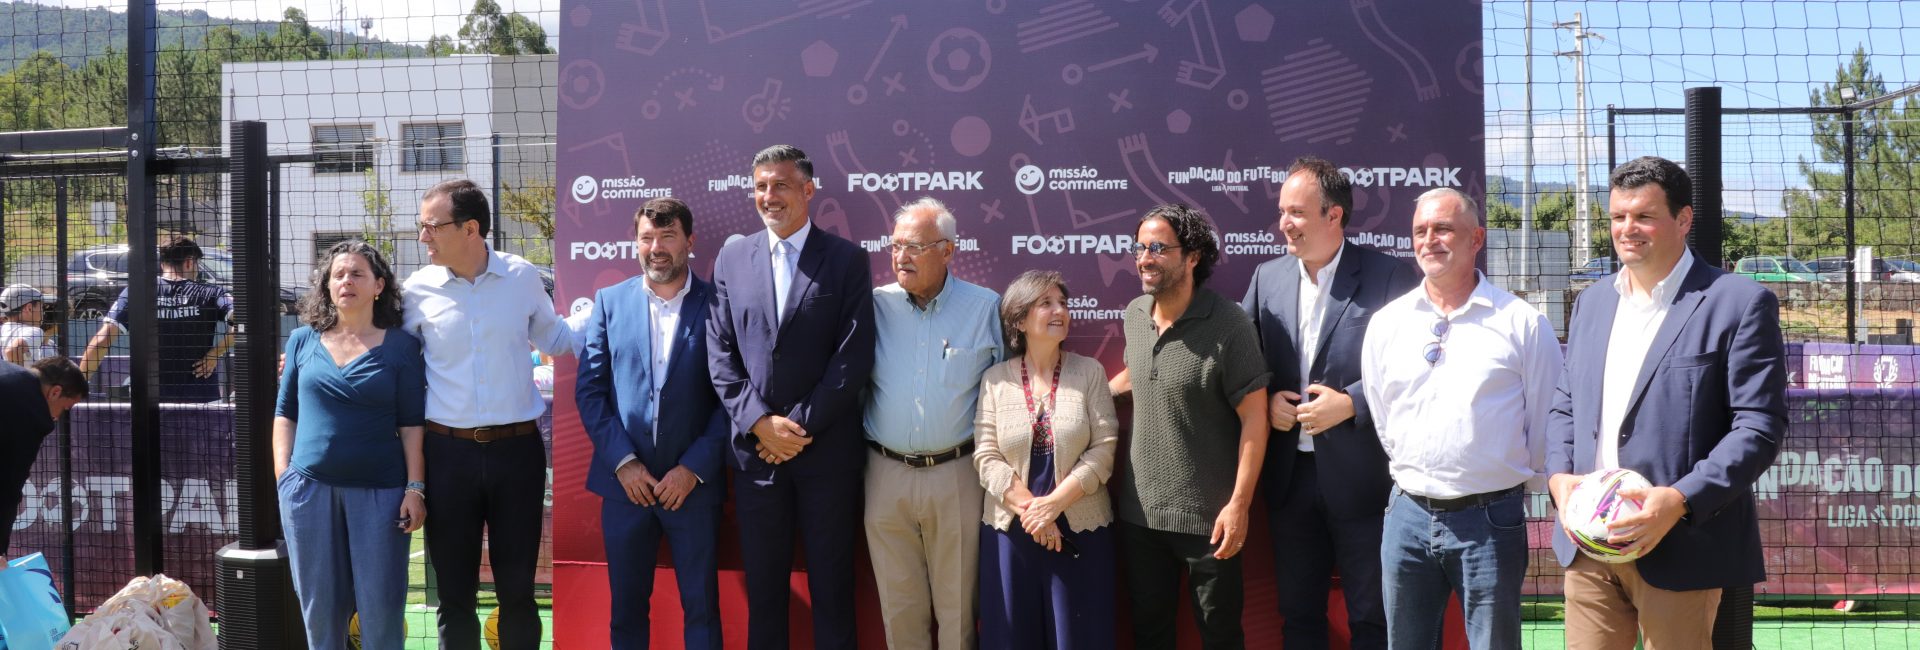 FootPark inaugurado no Parque Urbano Municipal da Lousã